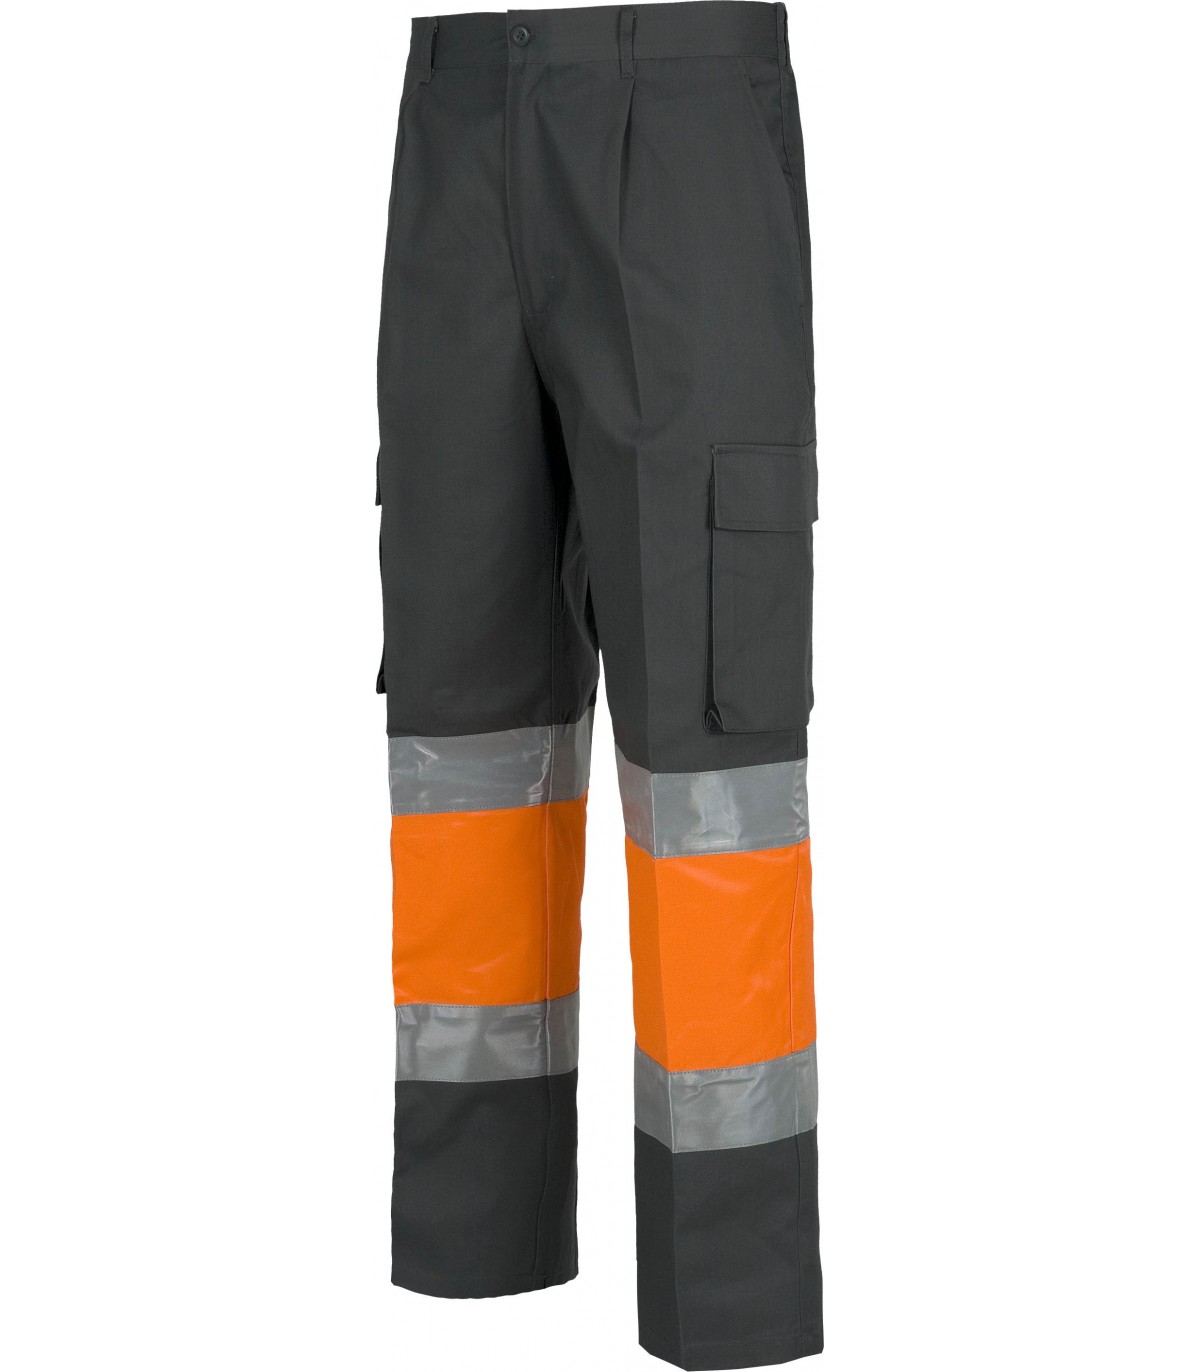 Pantalón C4018 Alta visibilidad, recto y multibolsillos. Elástico